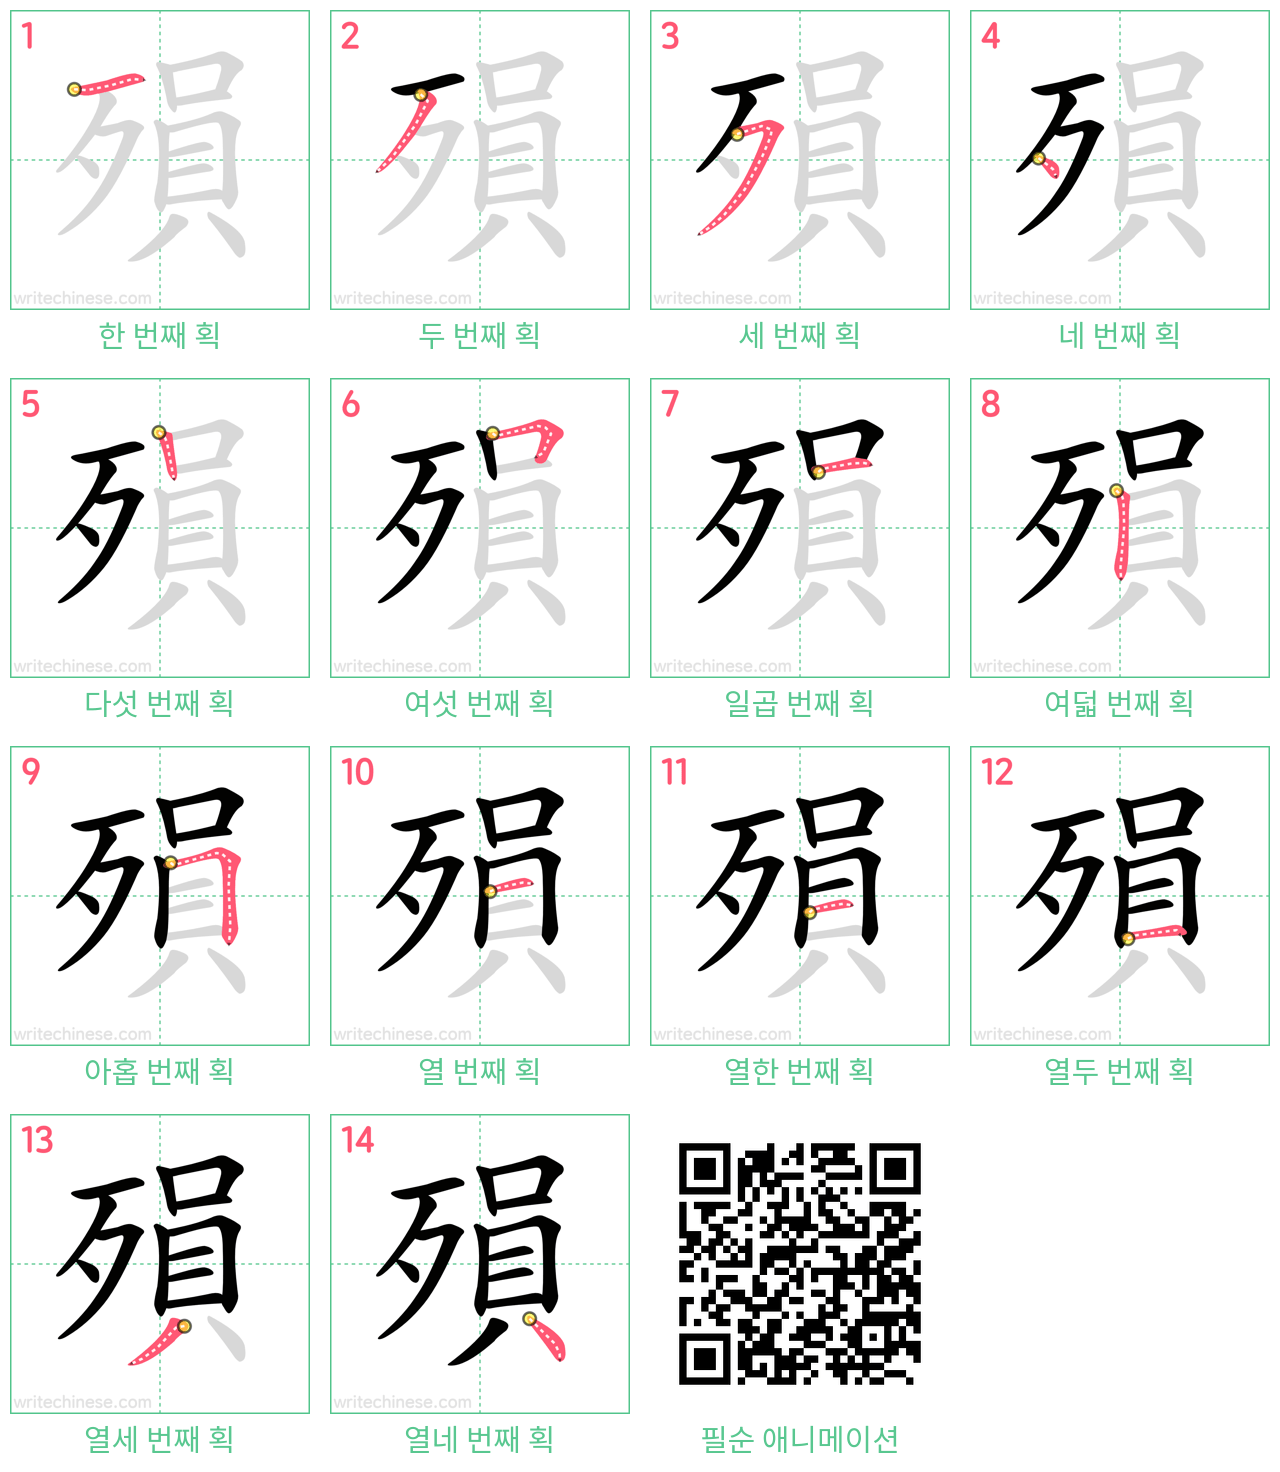 殞 step-by-step stroke order diagrams